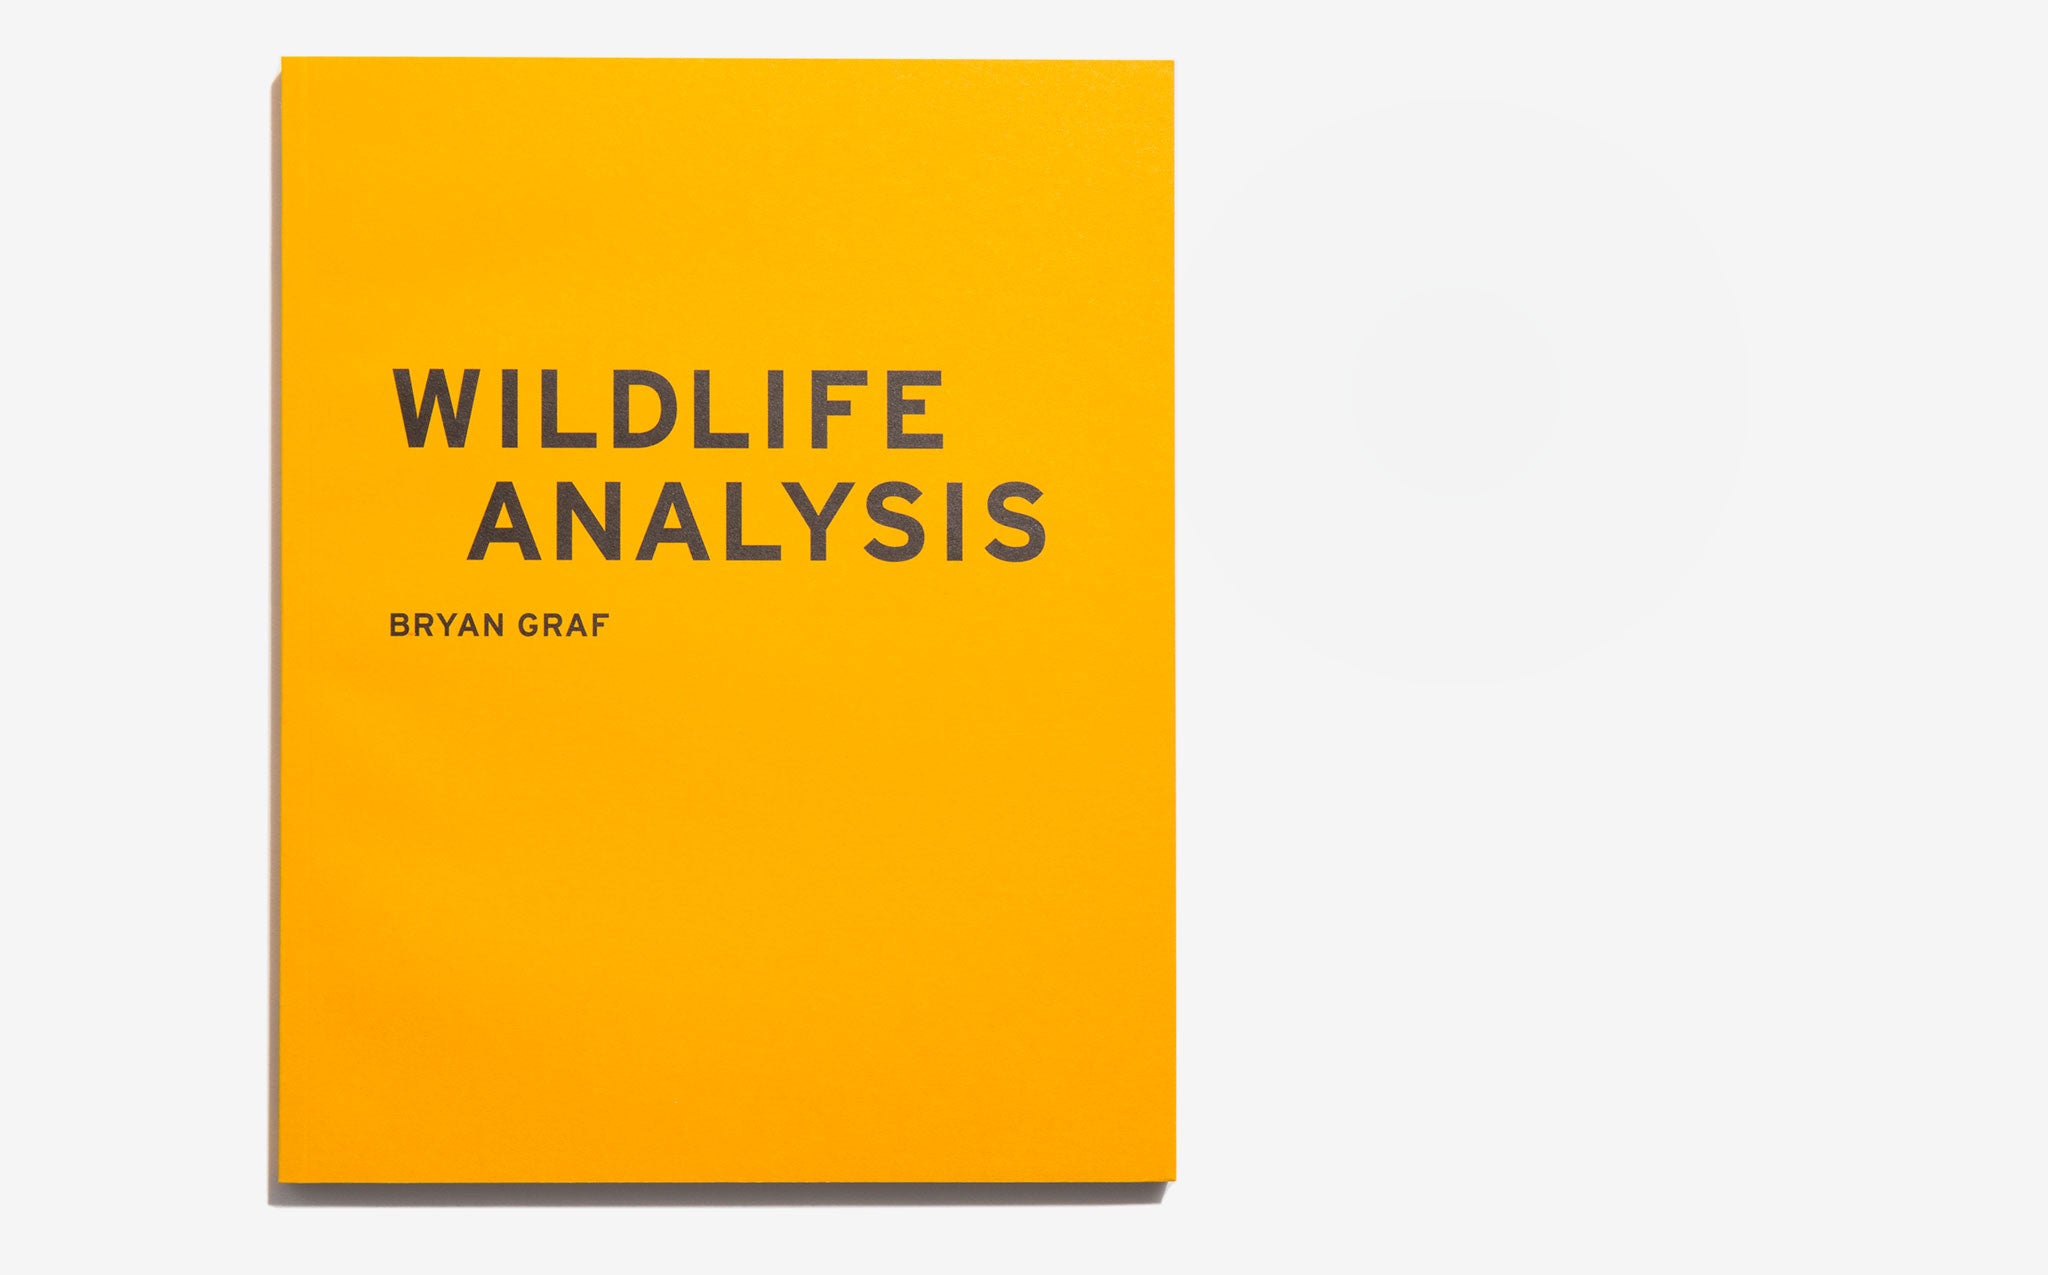 Wildlife Analysis - Bryan Graf